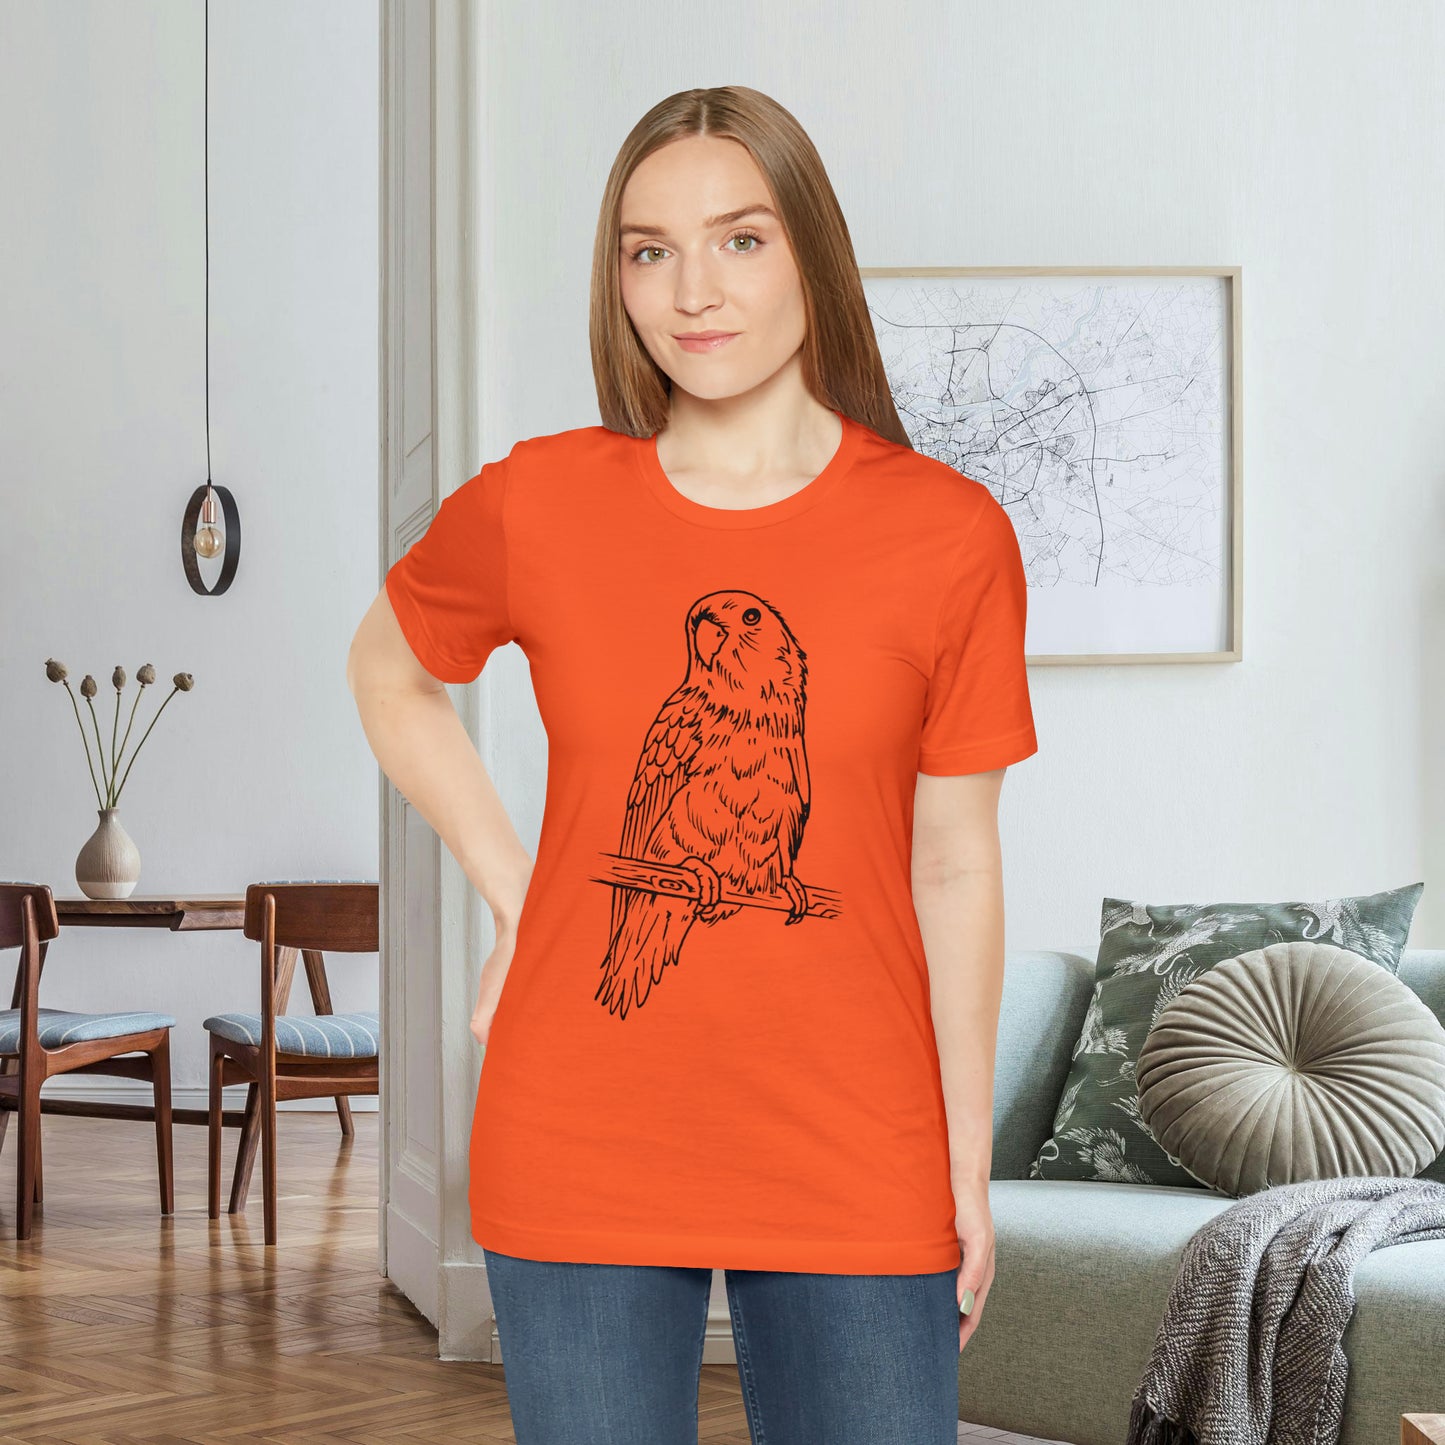 Lovebird Cutie Pie, camiseta de arte lineal